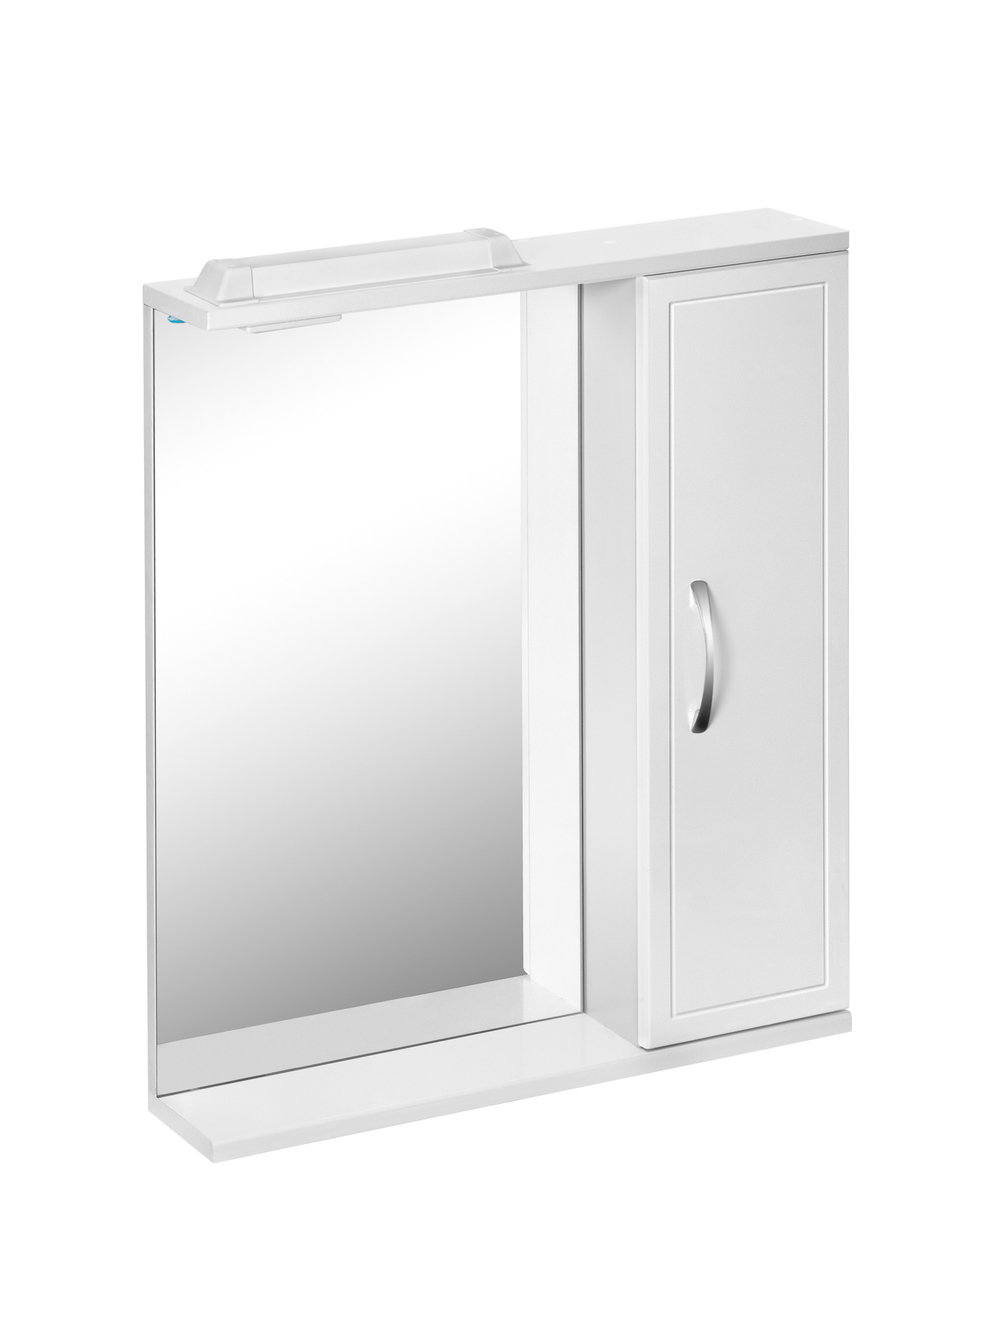 Шкаф зеркальный Панда 500 с подсветкой, правое открывание, арт. 00120